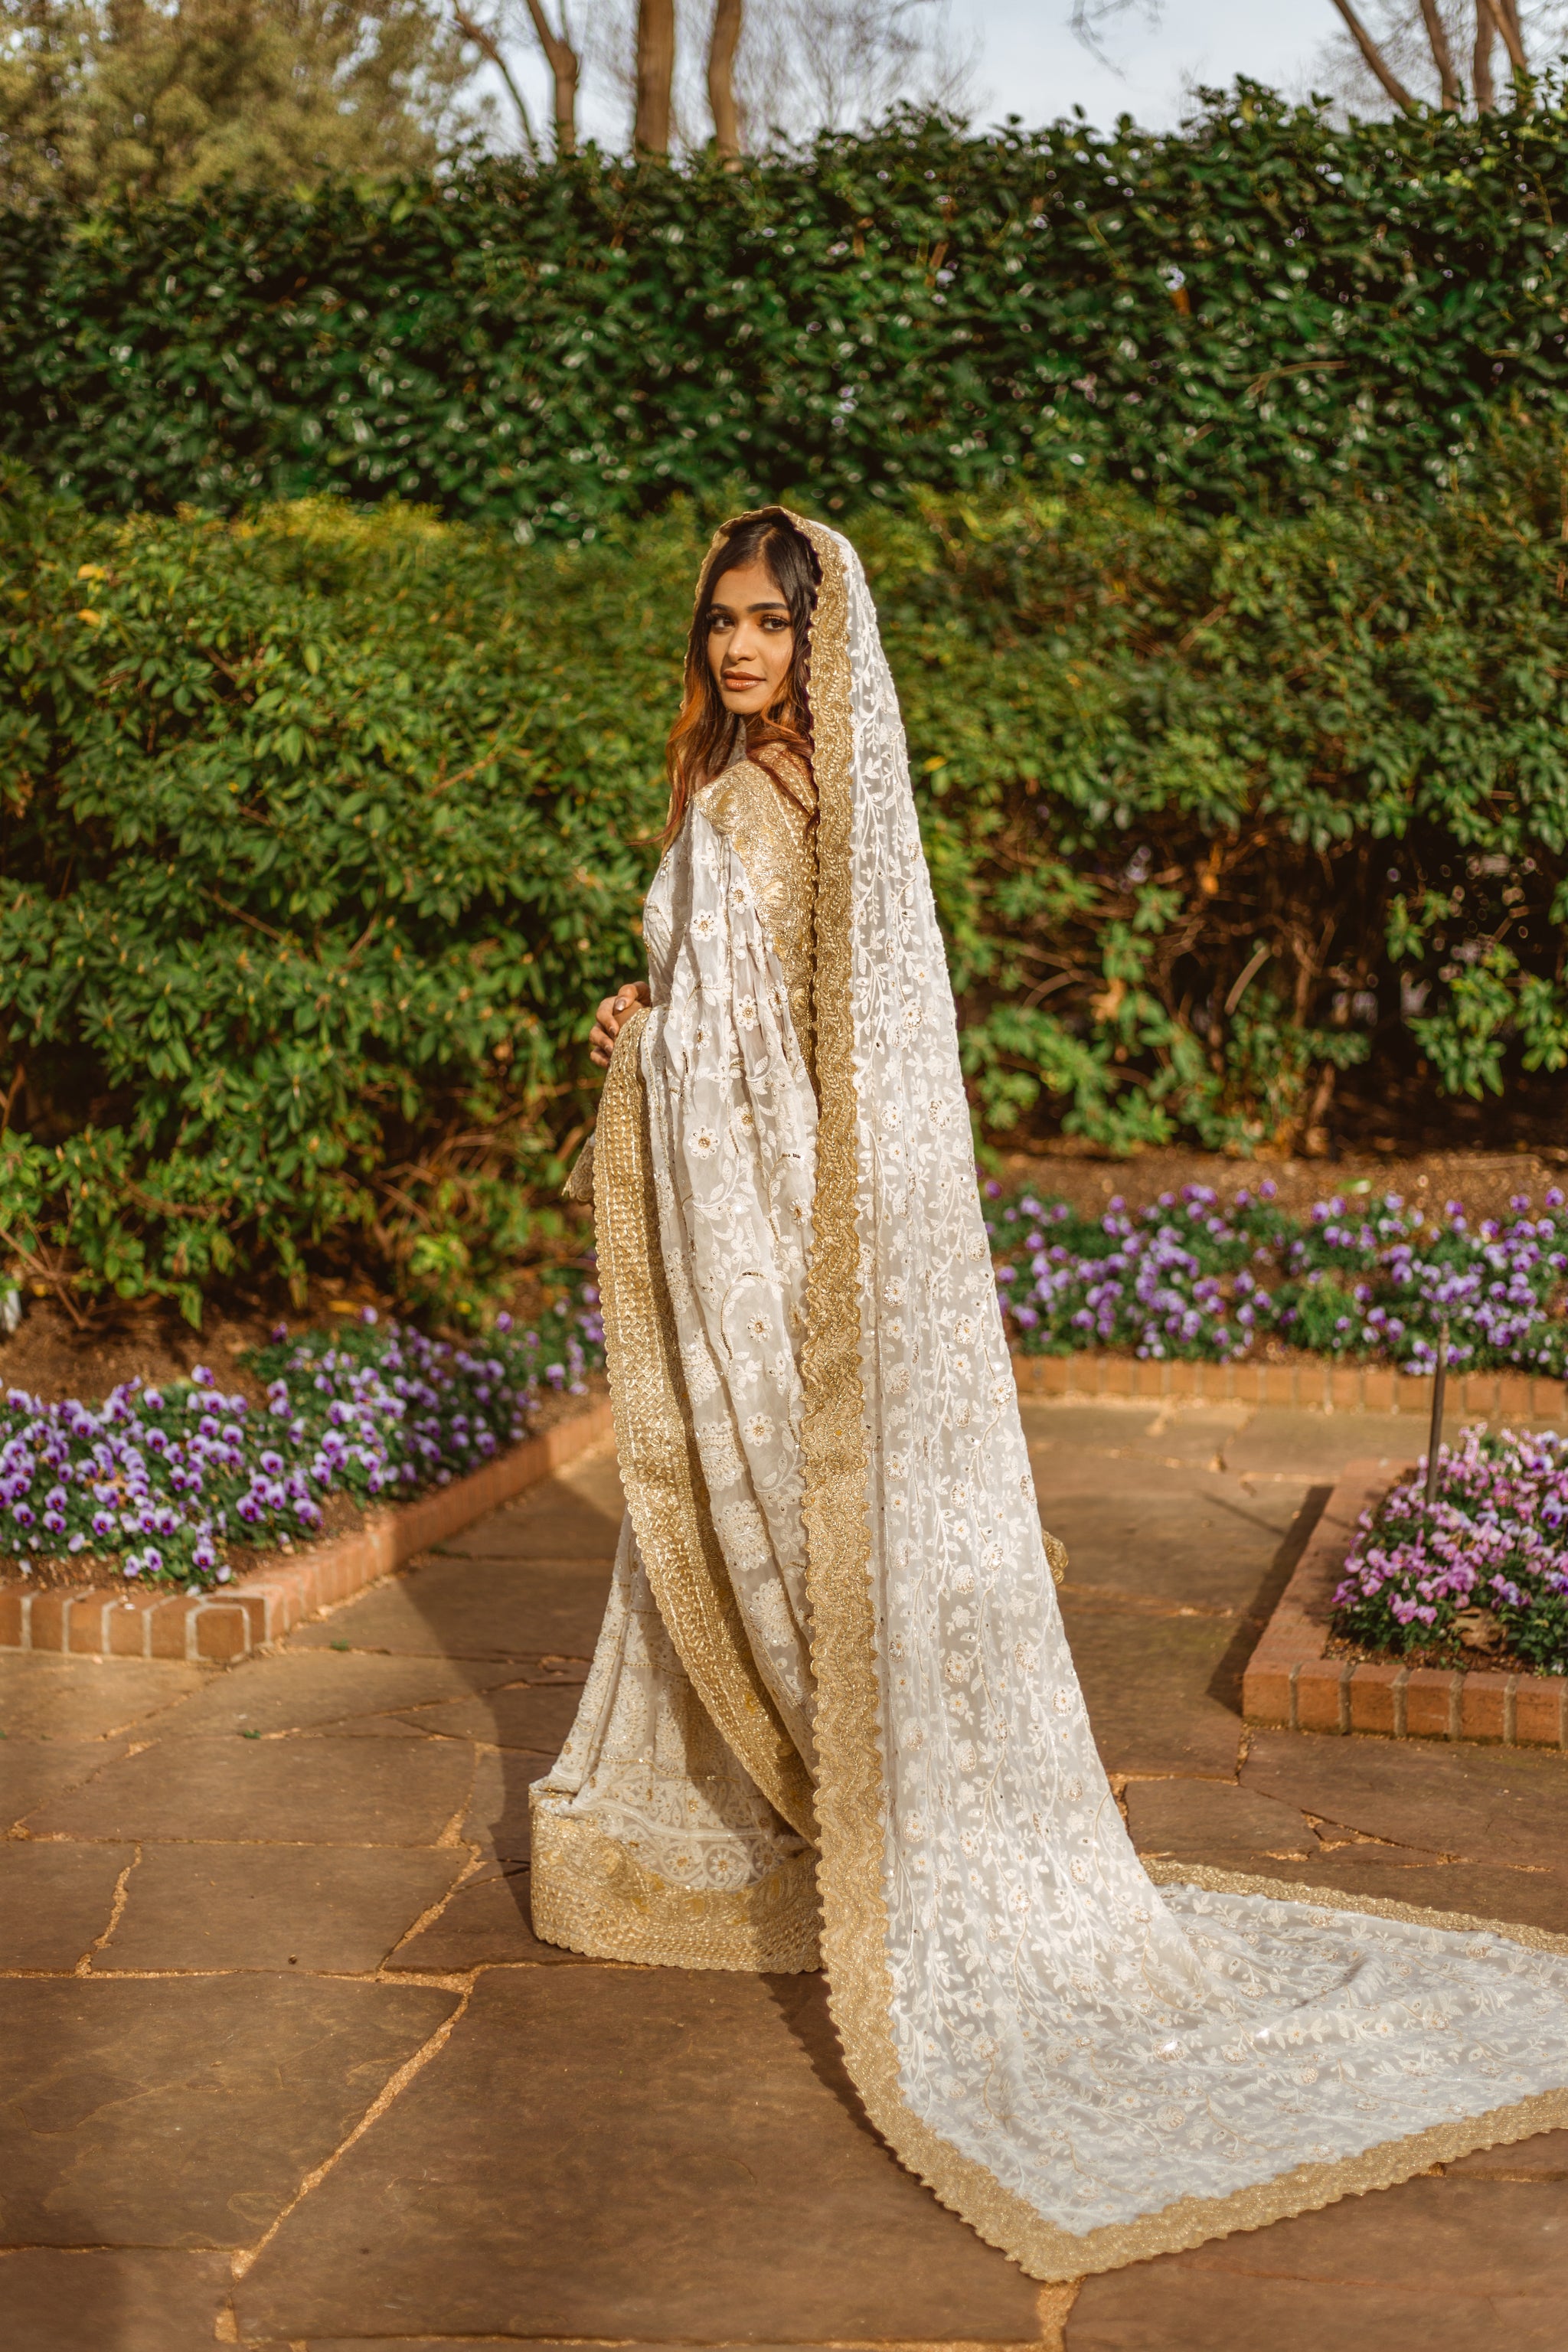 Custom Made Indian Bridal Saree in Cream White Lucknowi Fabric - Sushma Patel 